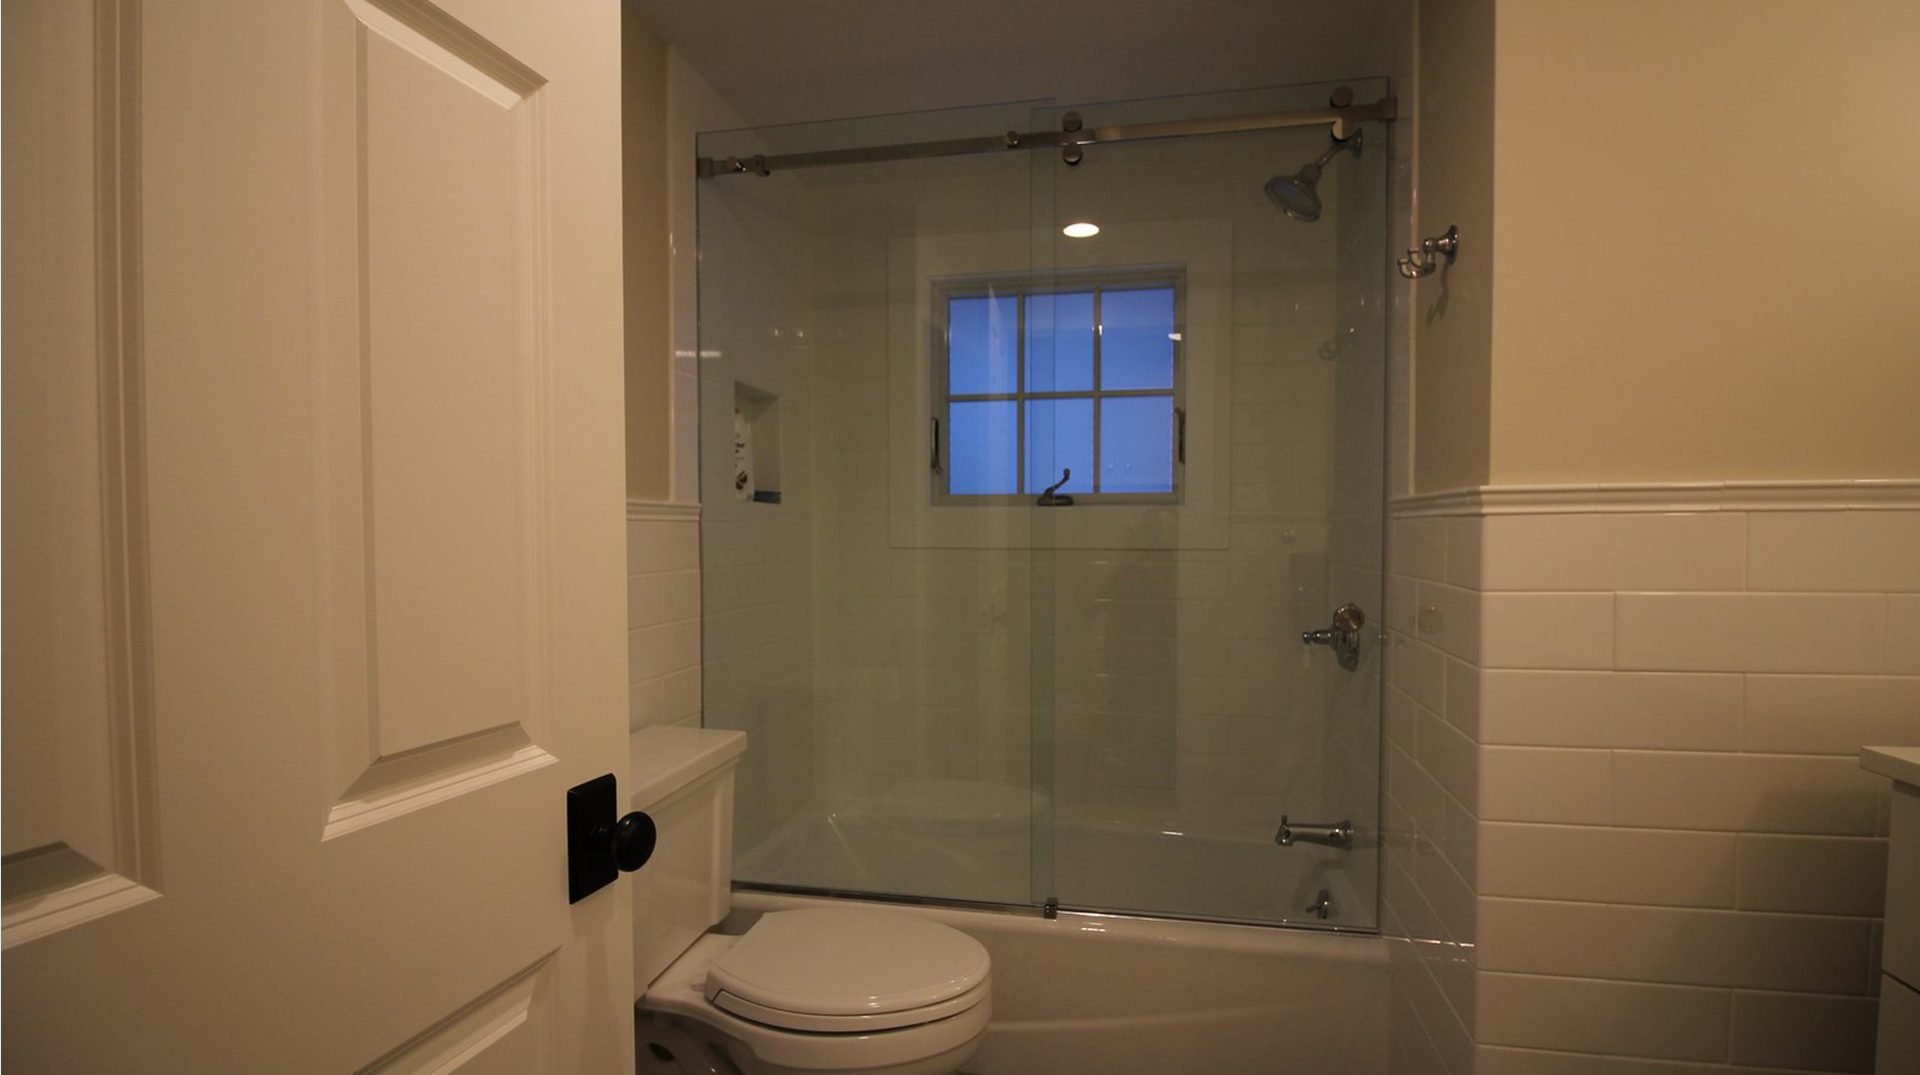 frameless sliding glass shower door